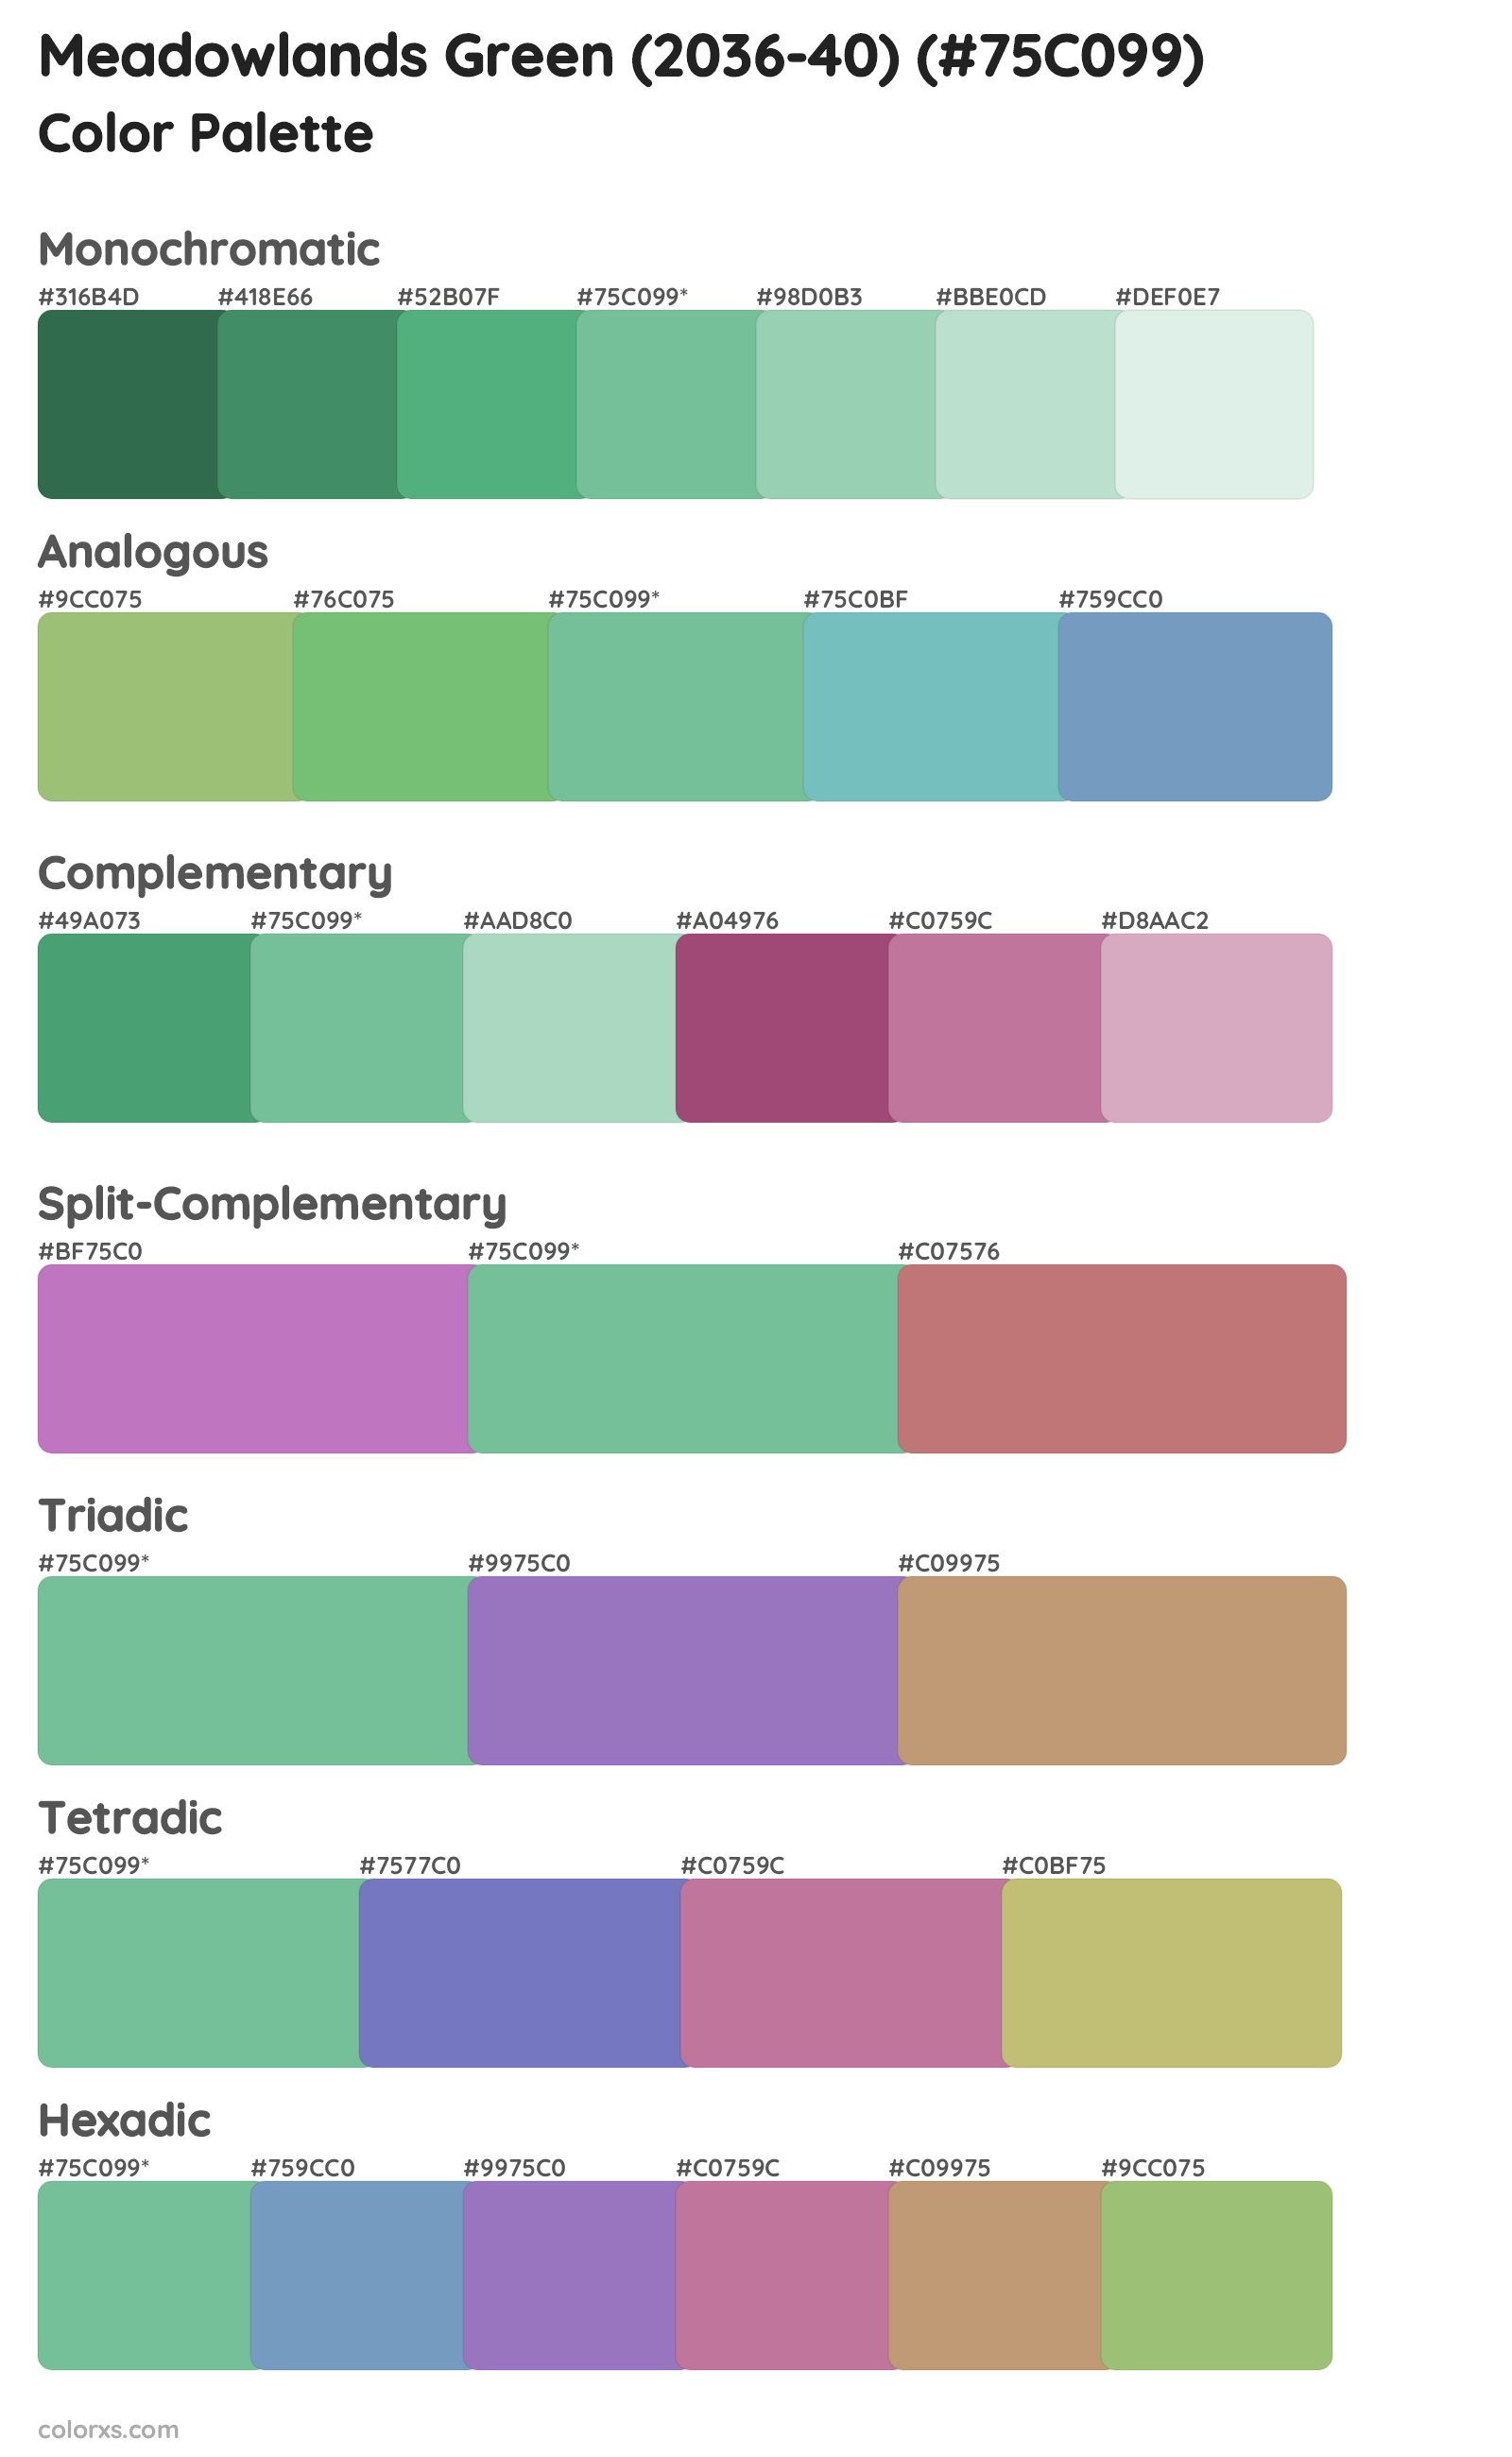 Meadowlands Green (2036-40) Color Scheme Palettes